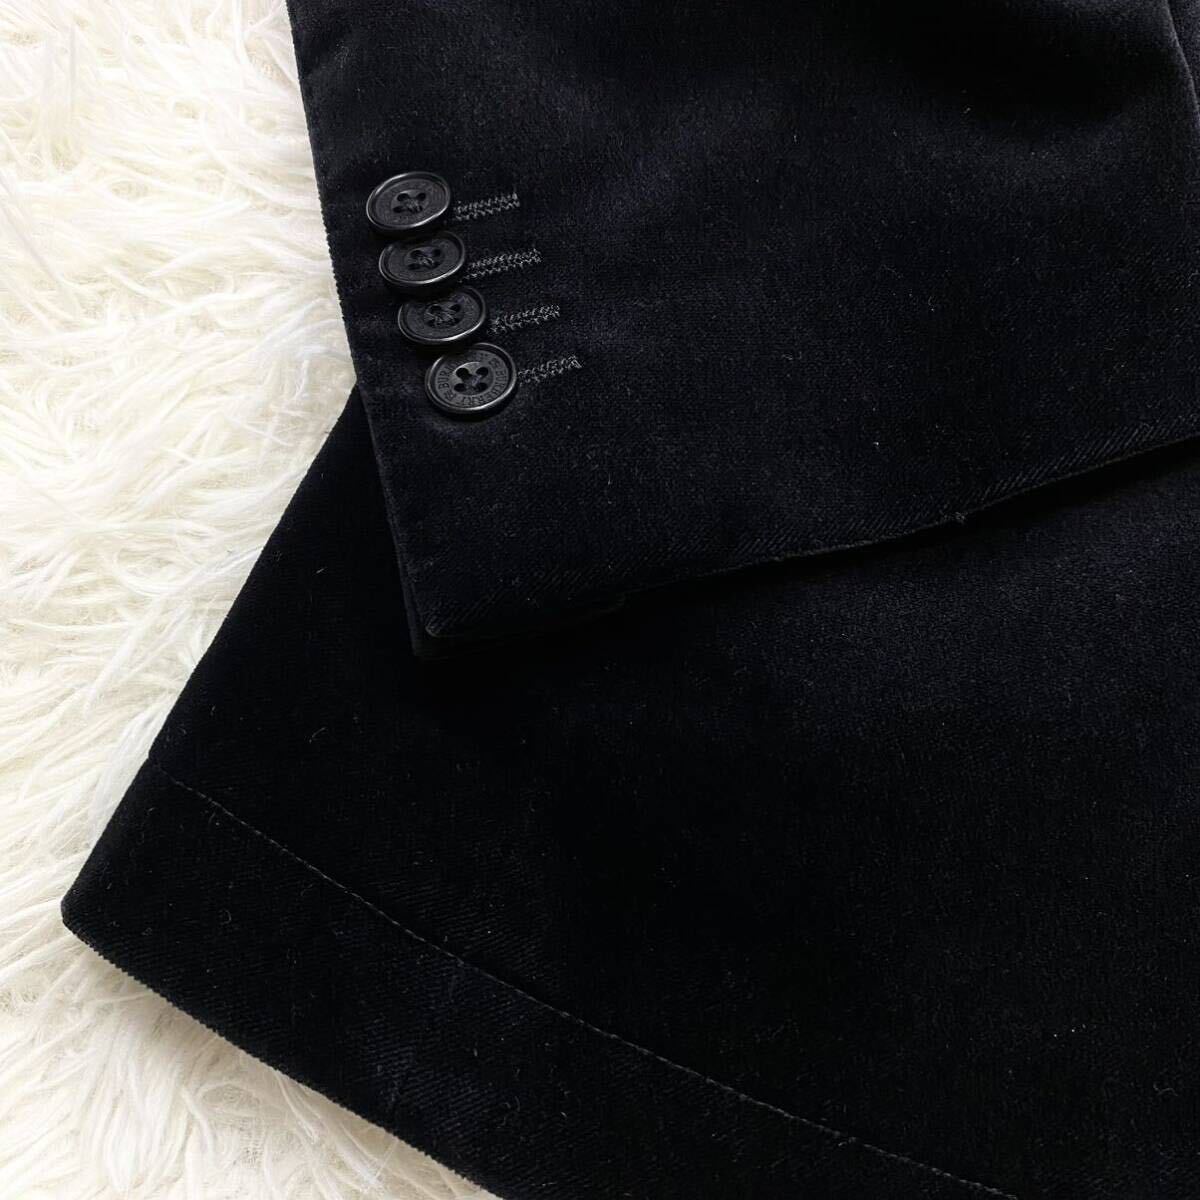  превосходный товар /. глянец велюр * Burberry Black Label tailored jacket Logo печать кнопка чёрный noba в клетку BURBERRY BLACK LABEL размер M